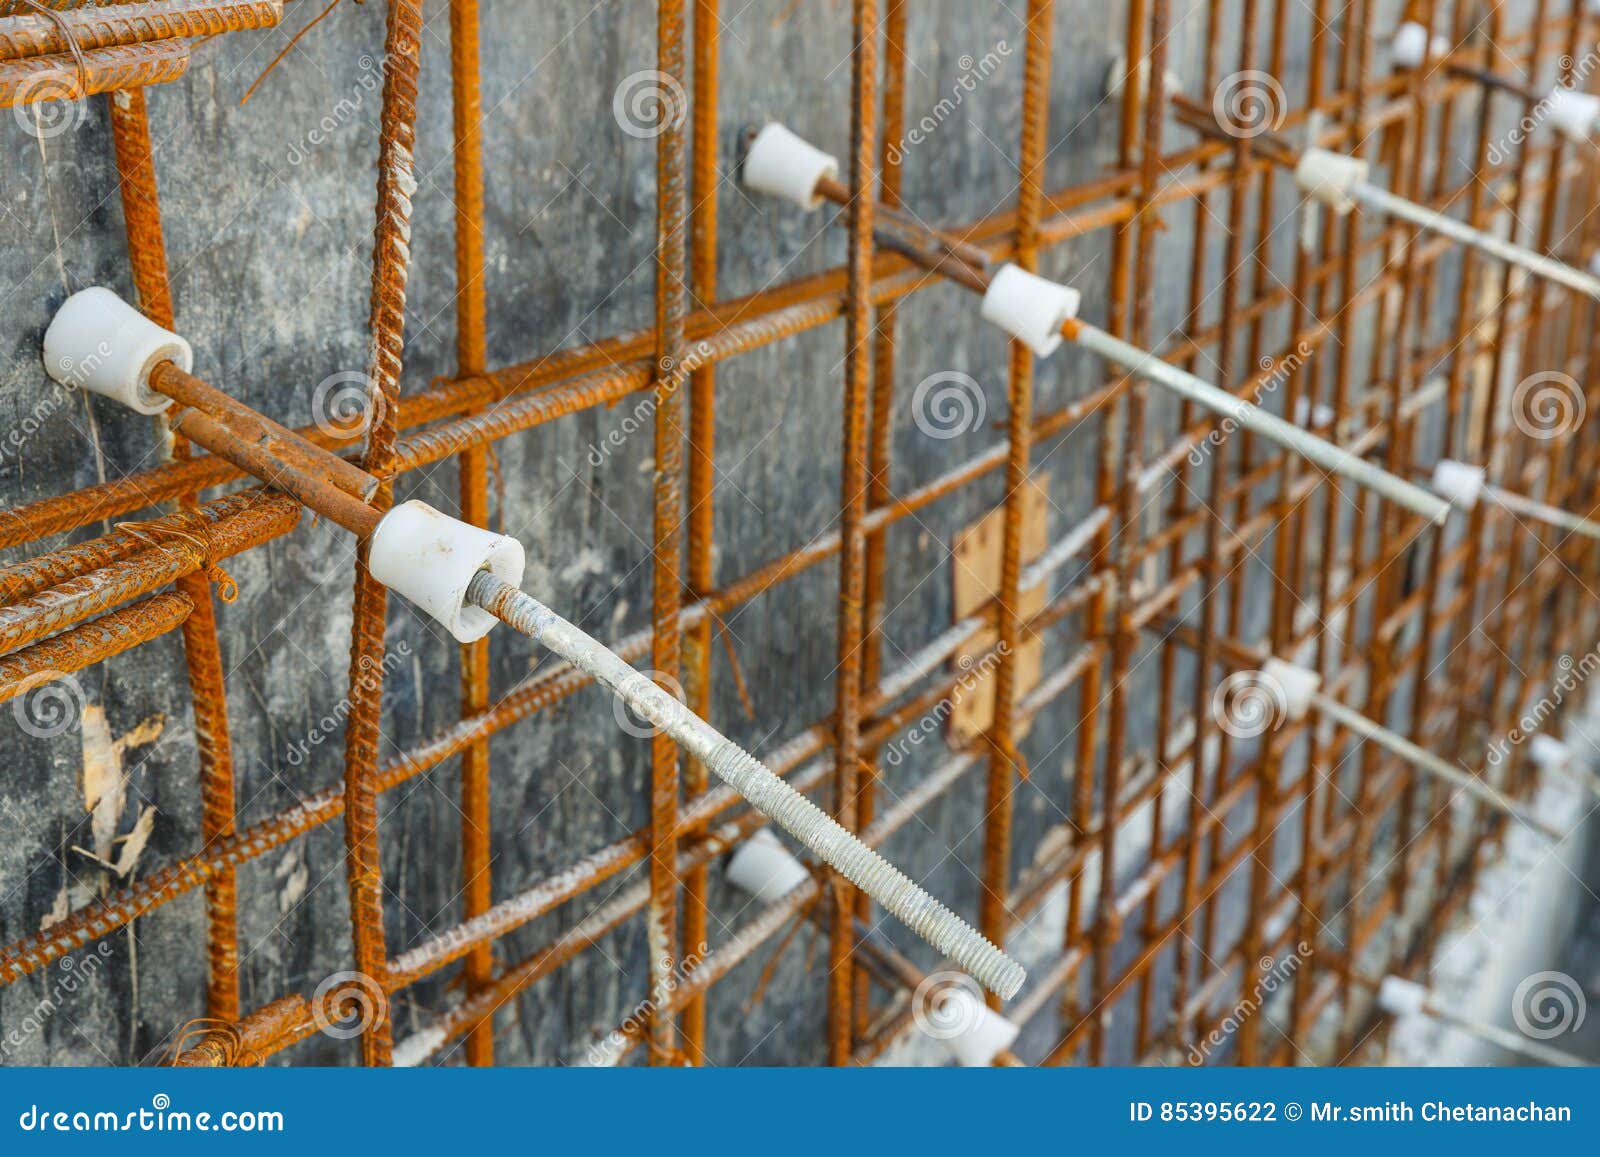 plastic tie rod cone for concrete wall formwork